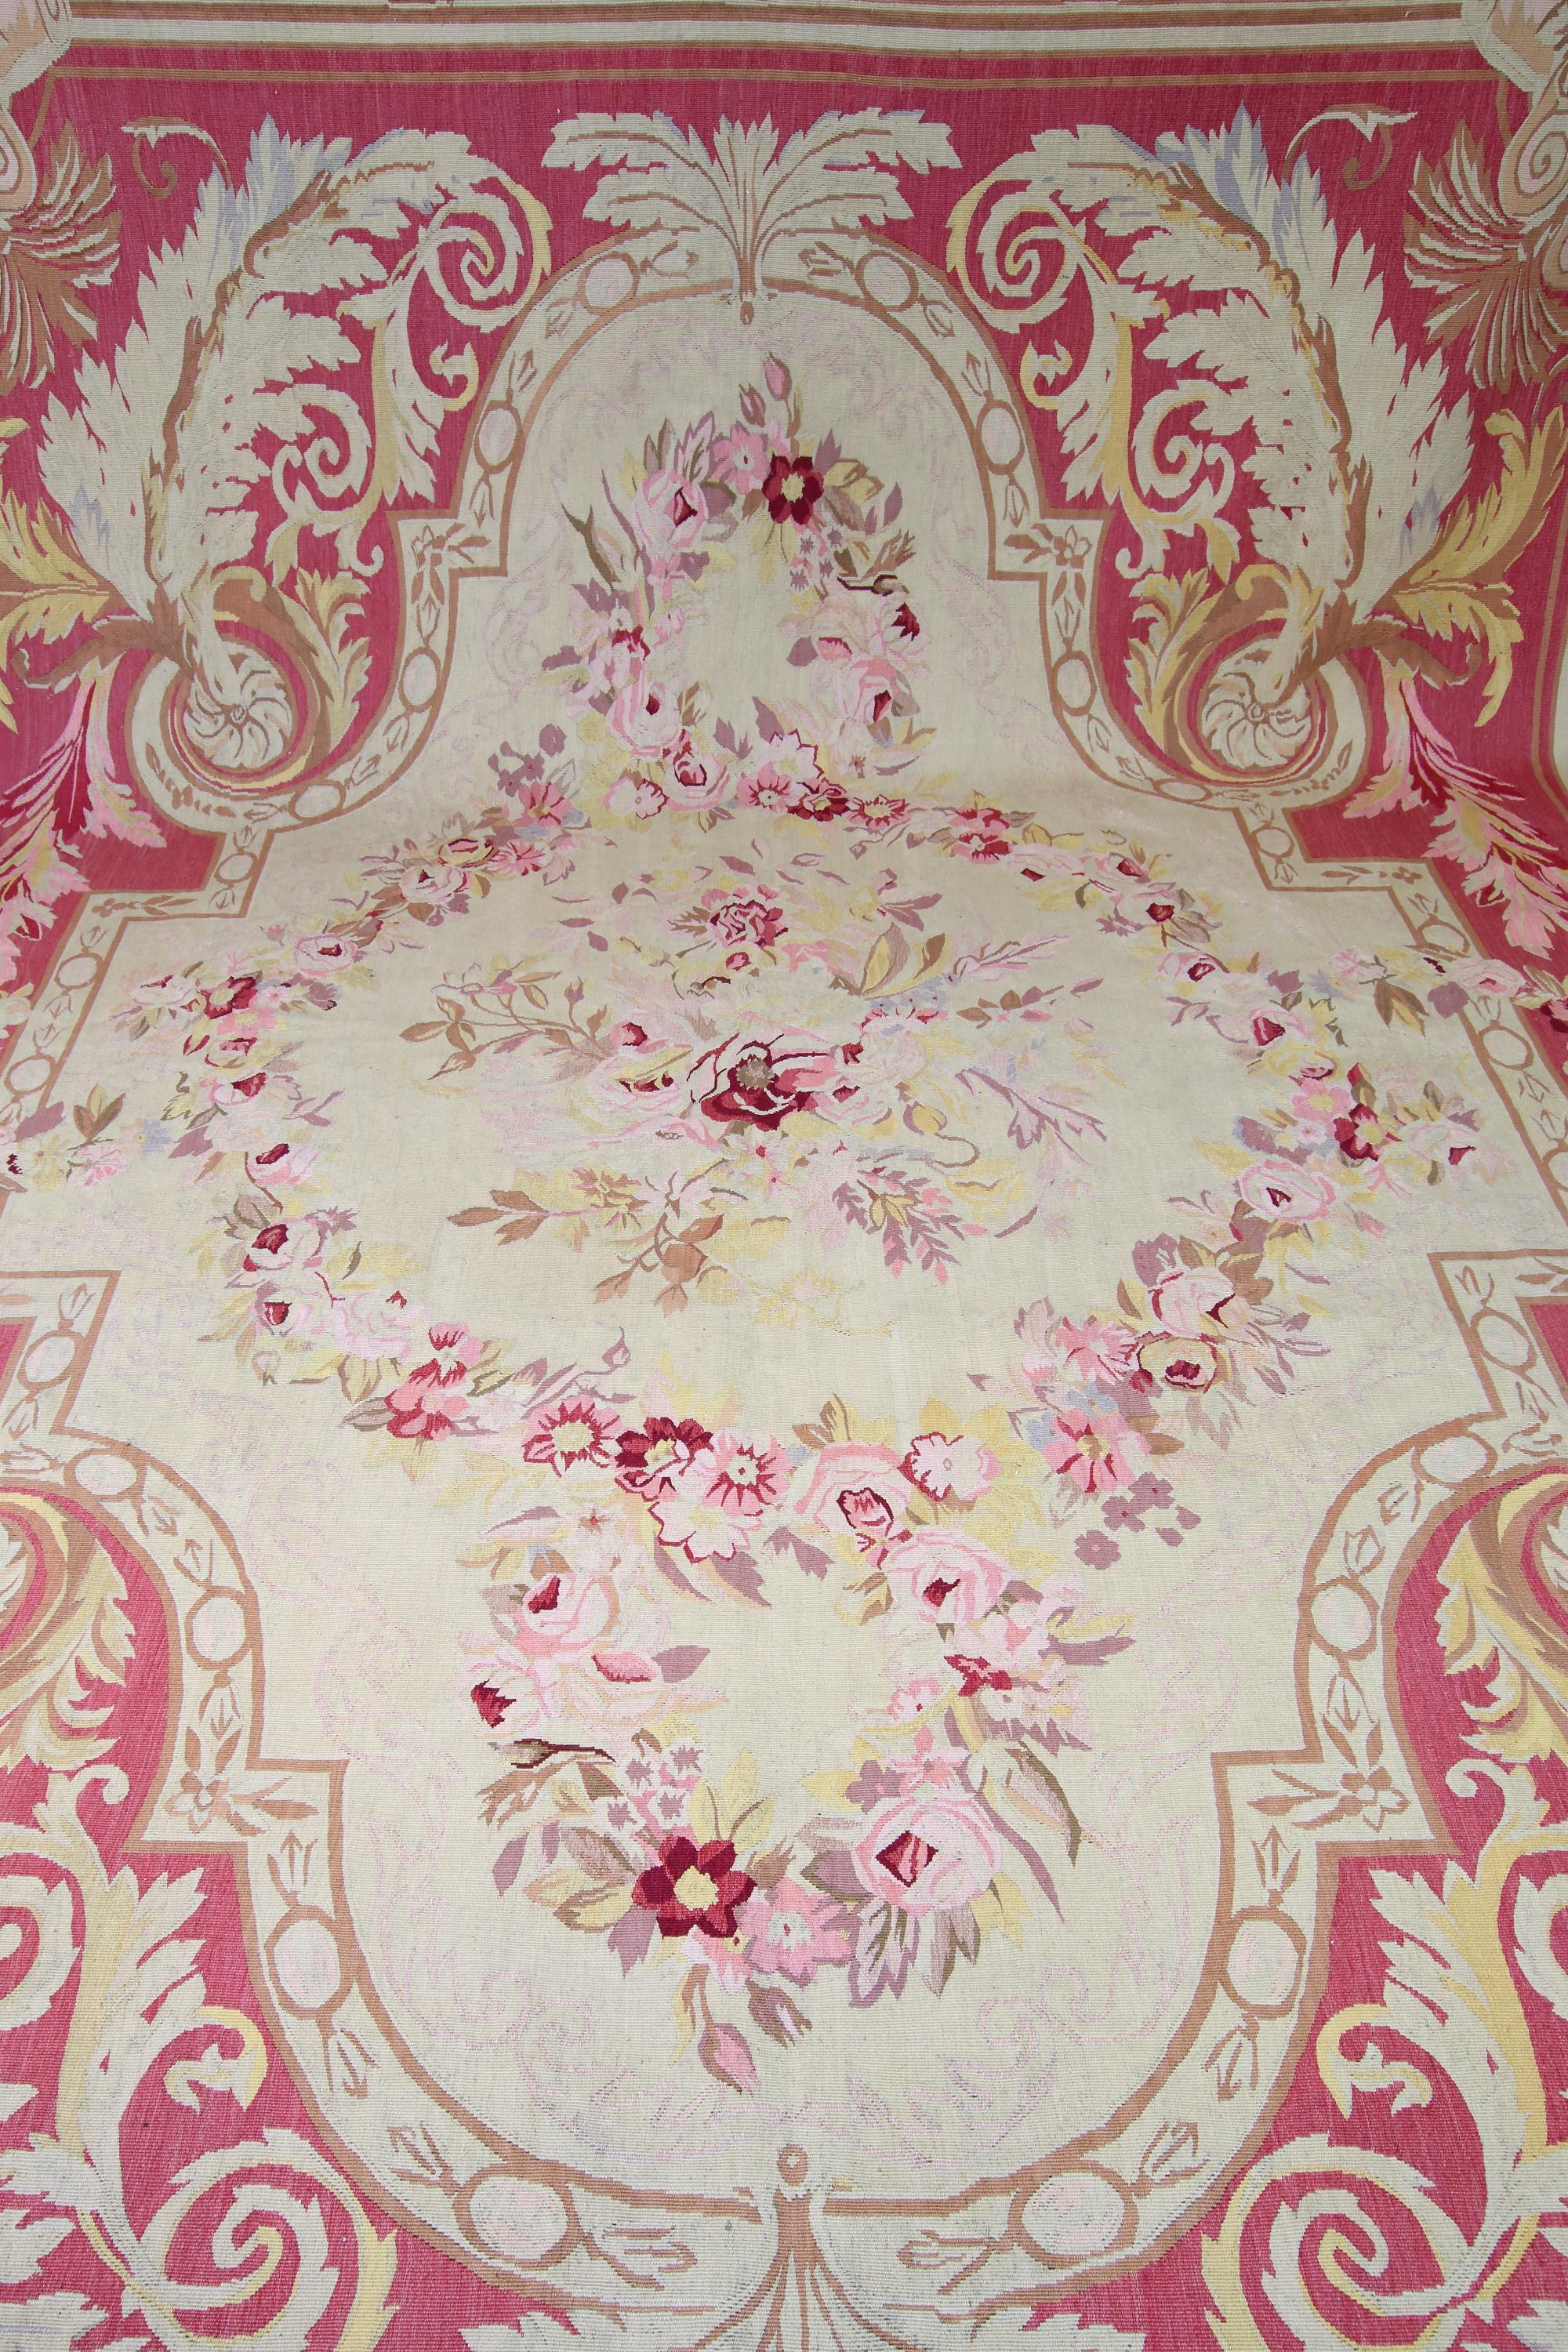 Tapis d'Aubusson français/parisien Louis XVI à fleurs roses, circa 1900

Tapis d'Aubusson anciennement tissé en tapisserie de style Louis XVI présentant un grand cartouche incurvé de couleur crème sur un fond de couleur rose. Le cartouche renferme